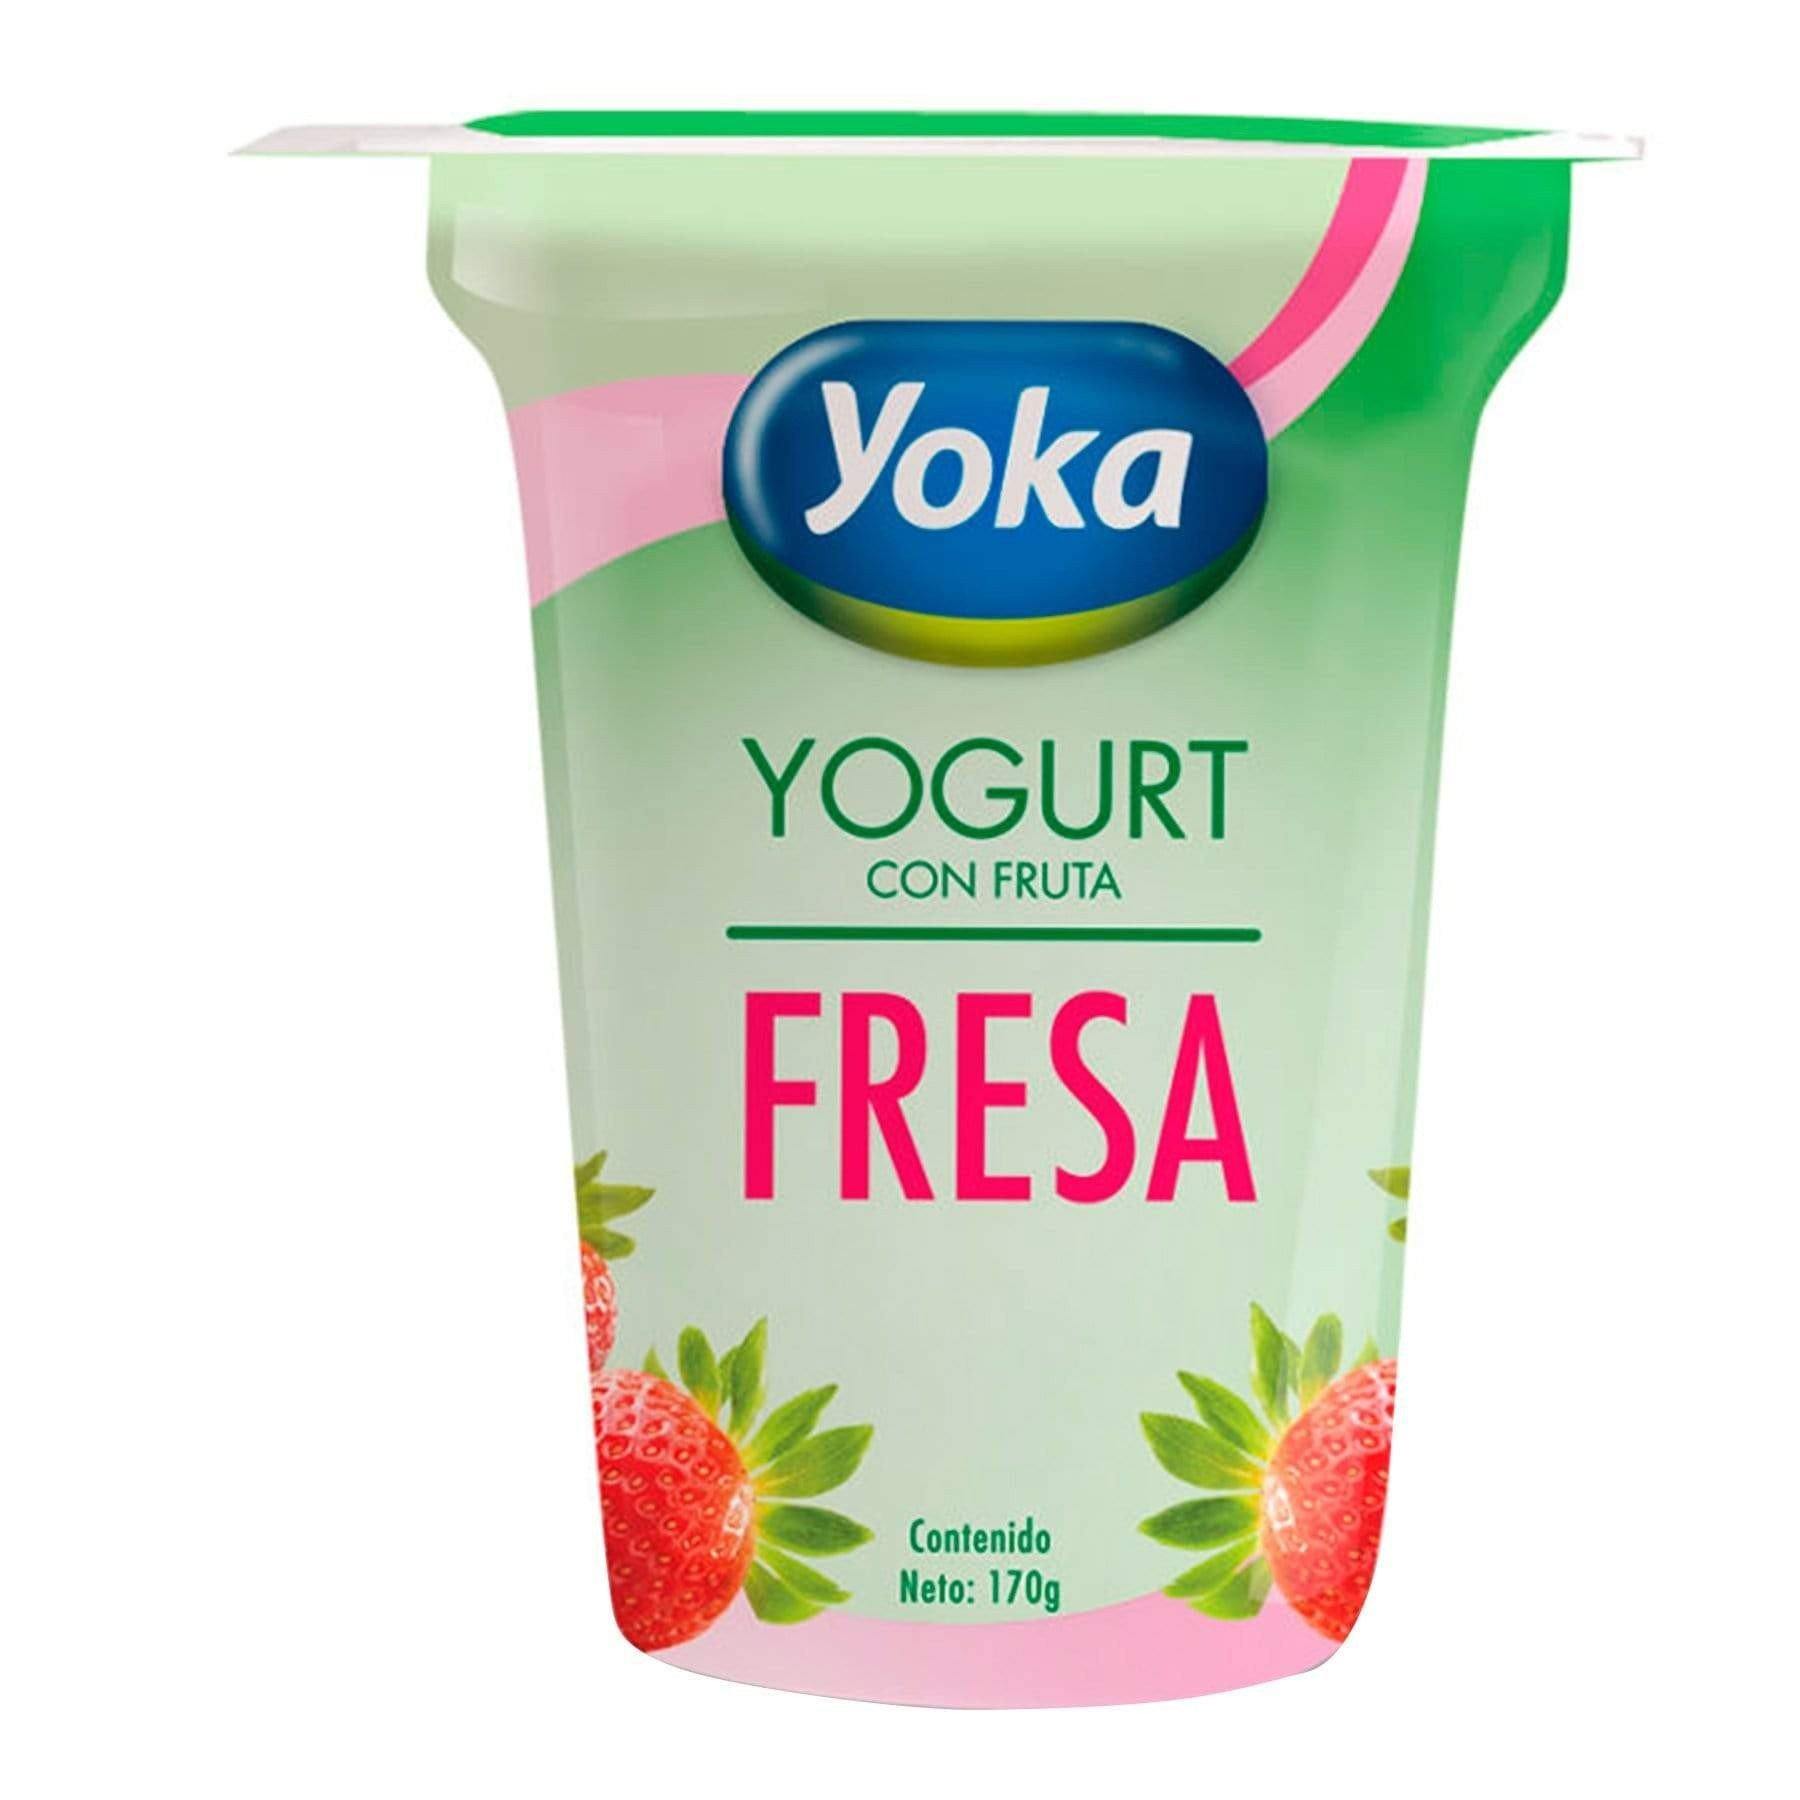 Concentración Álbum de graduación Renacimiento yogurt-yoka-fresa-6-oz